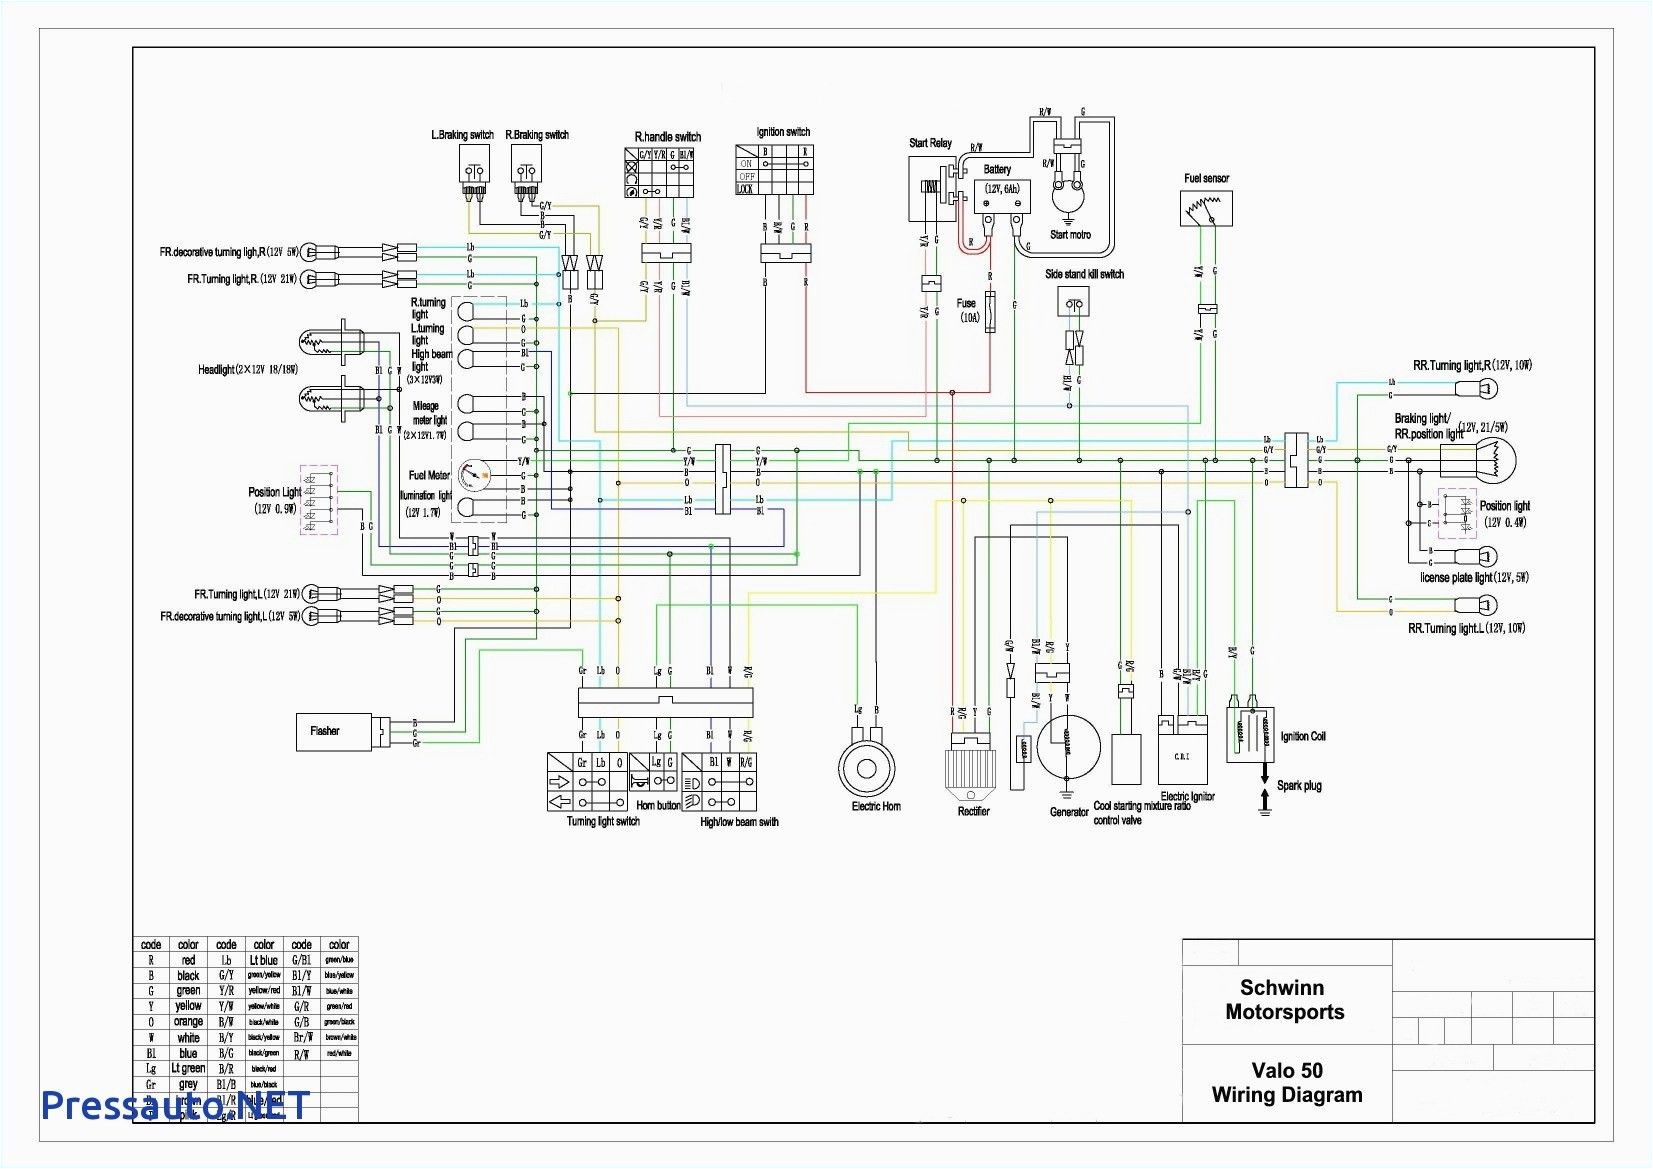 tao tao 50cc scooter wiring diagram wiring diagram showtao tao 50cc wiring diagrams wiring diagrams favorites